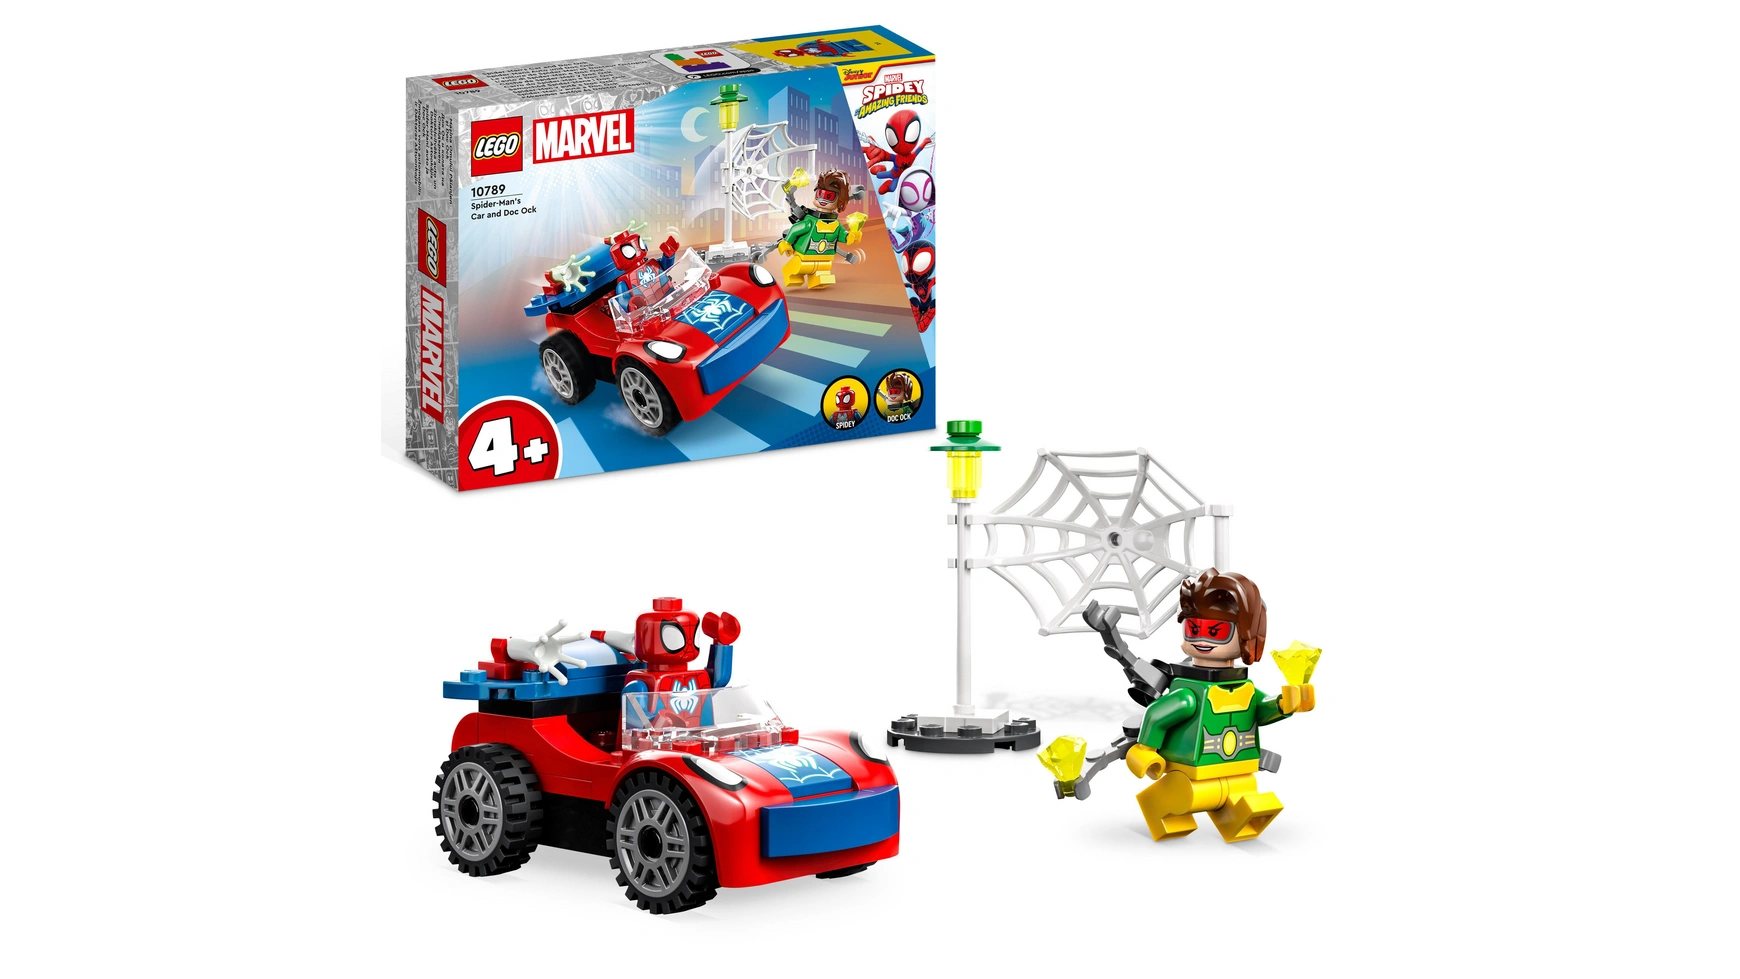 Lego Marvel Набор Машина Человека-паука и Дока Ока-Паука, 4+ игрушки